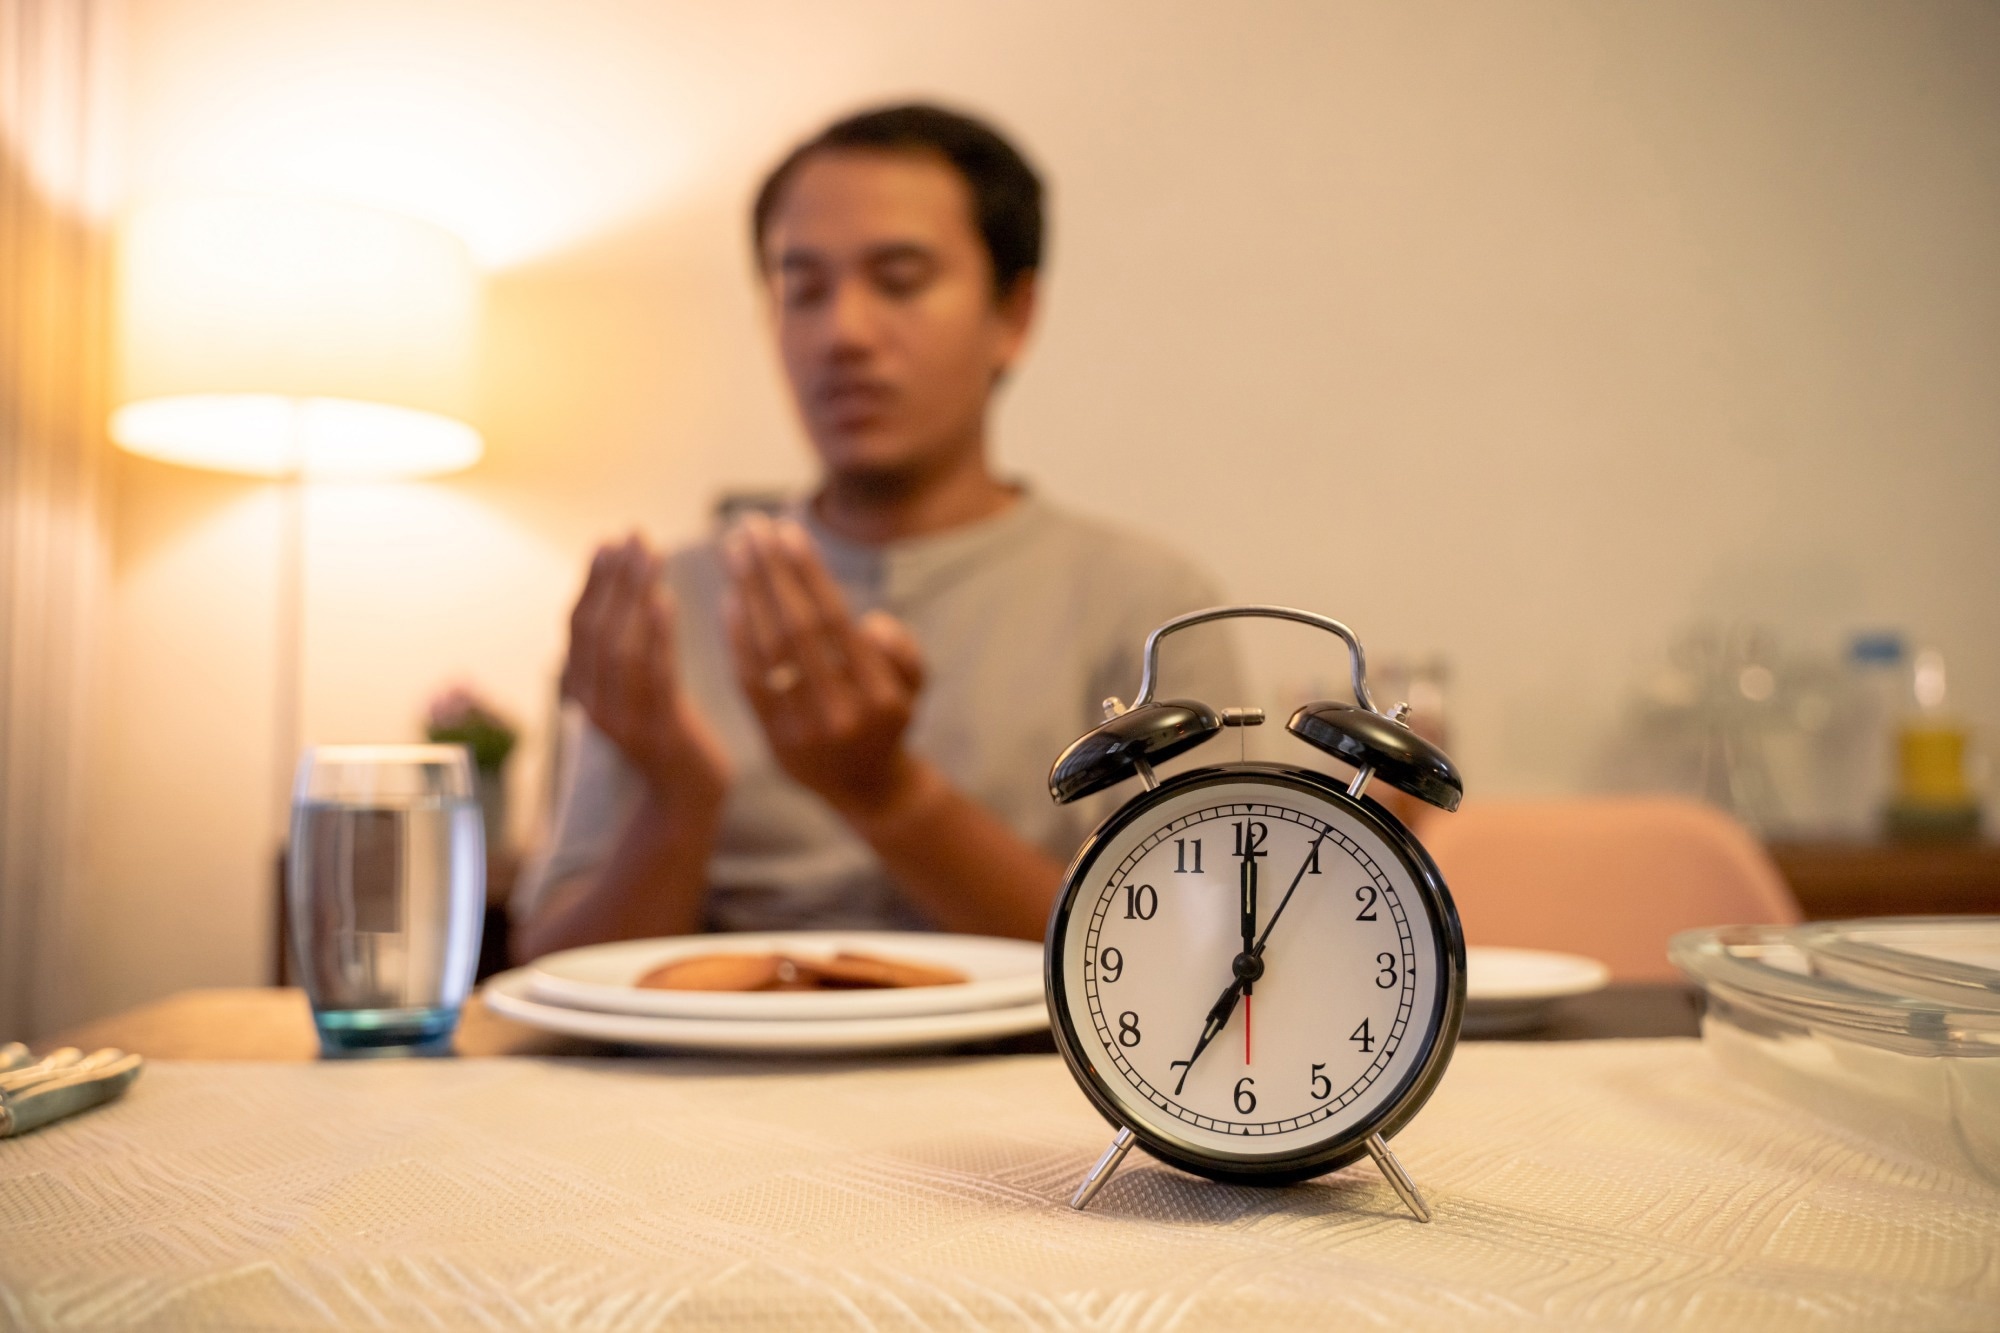 Étude : Métabolomique du jeûne du Ramadan et risque associé de maladies chroniques.  Source de l’image : Odua Images / Shutterstock